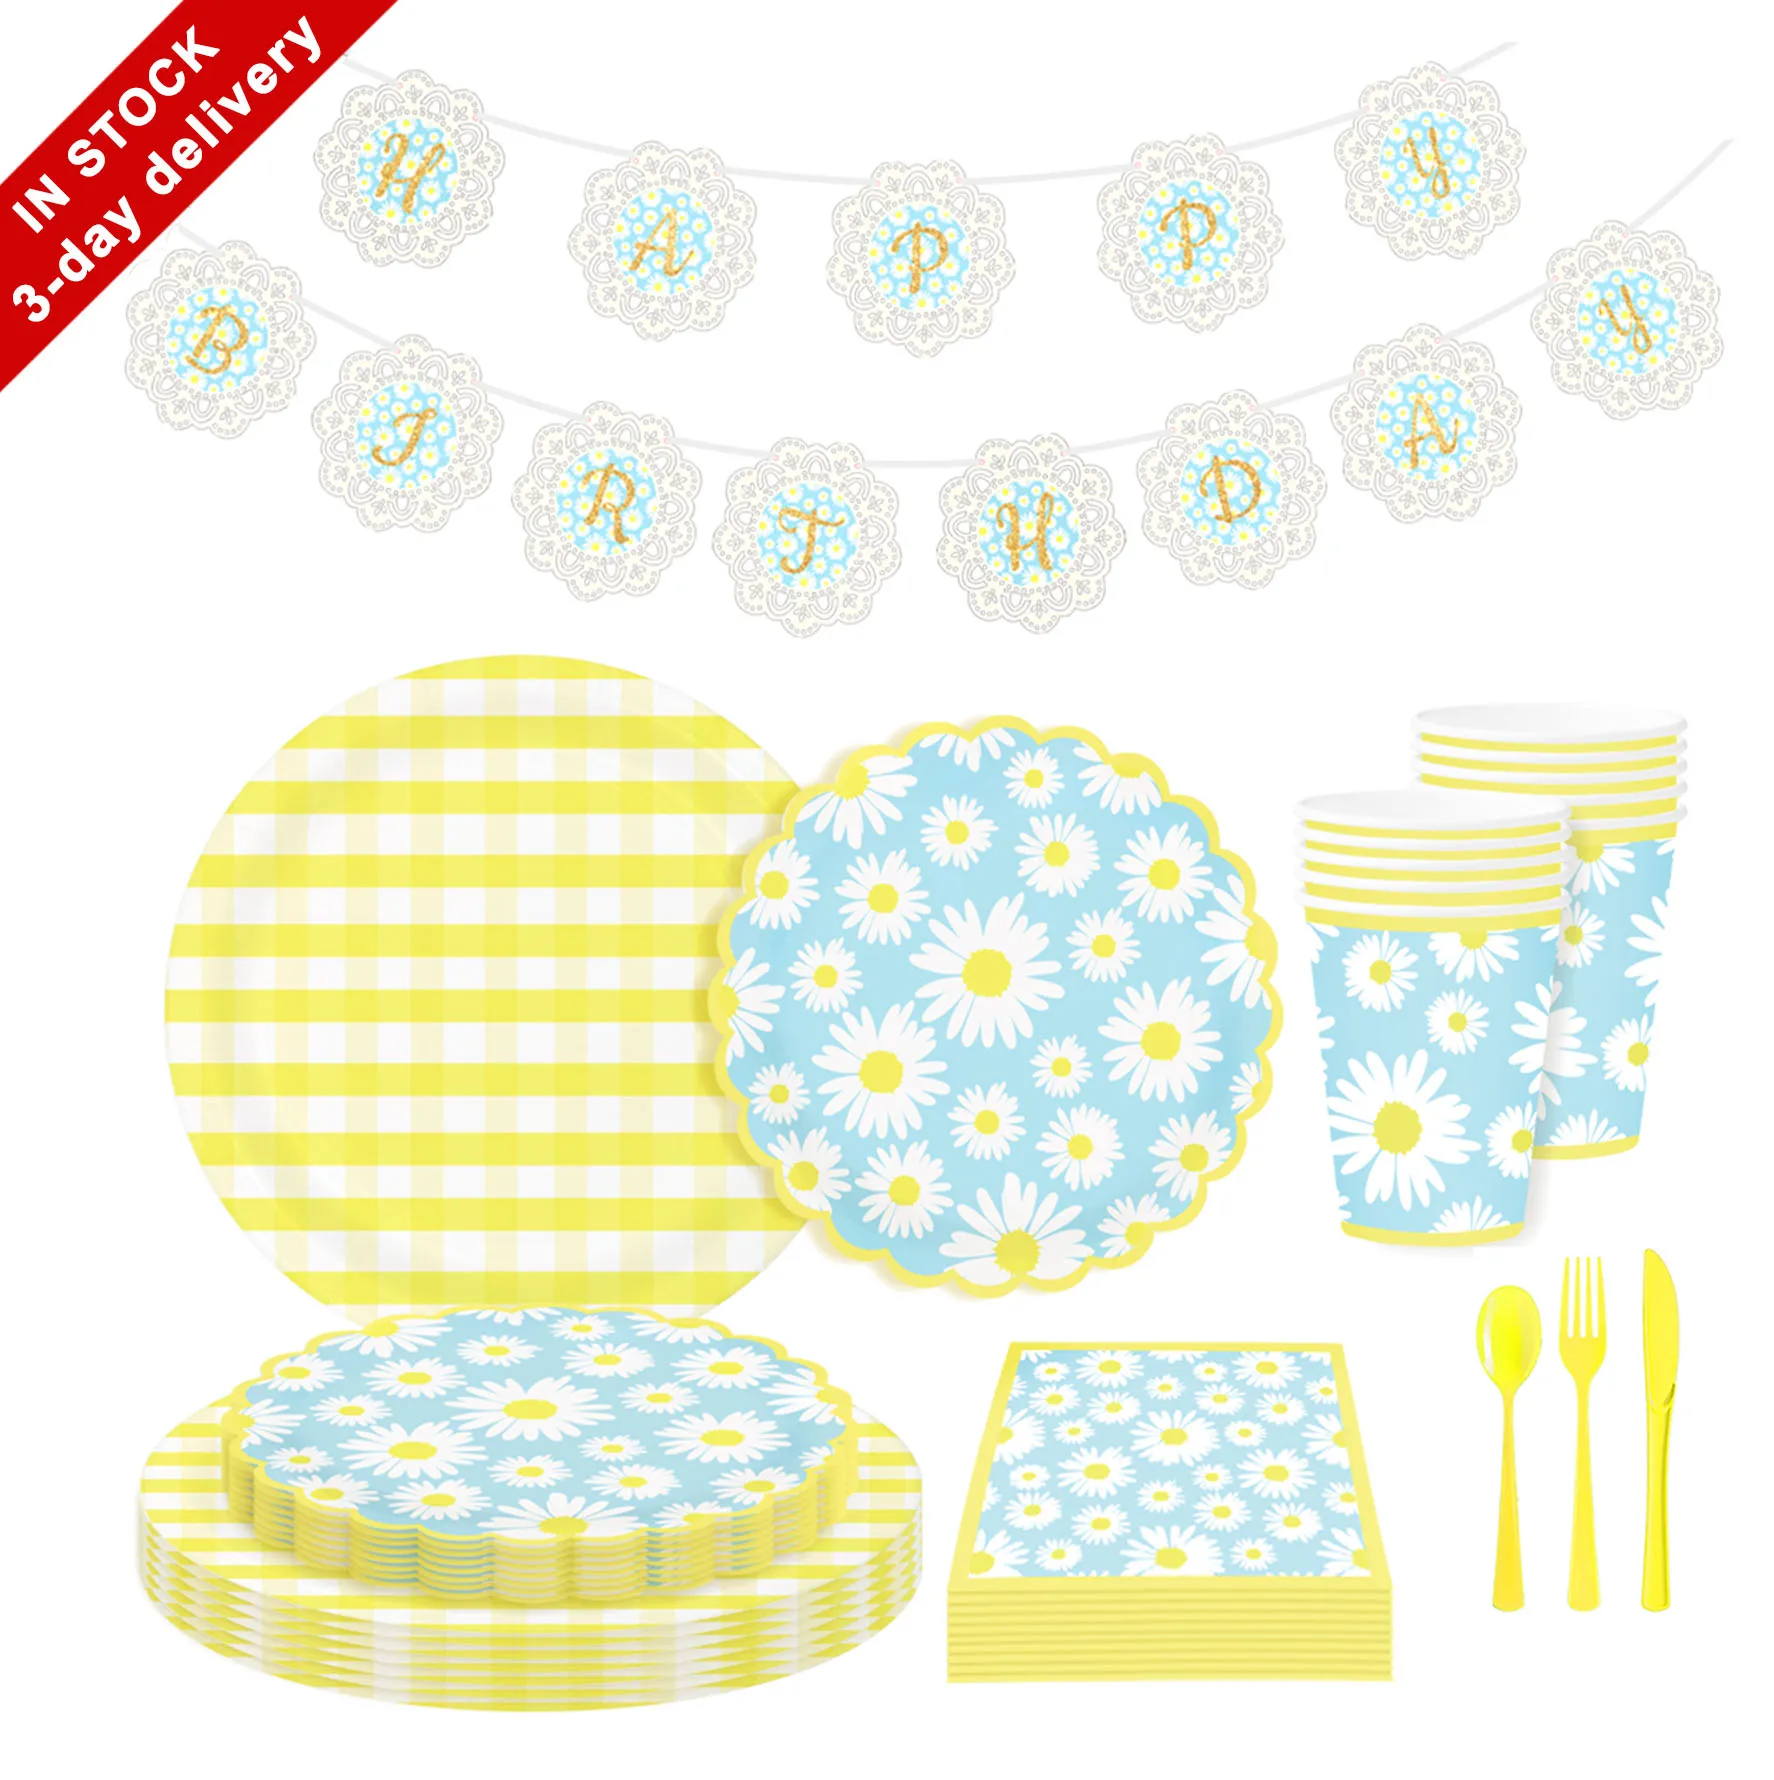 Бумажные тарелки Nicro с маргаритками, чашки, салфетки, столовая посуда, баннер на день рождения для маленьких девочек, принадлежности для летней вечеринки, набор посуды (1600289327565)